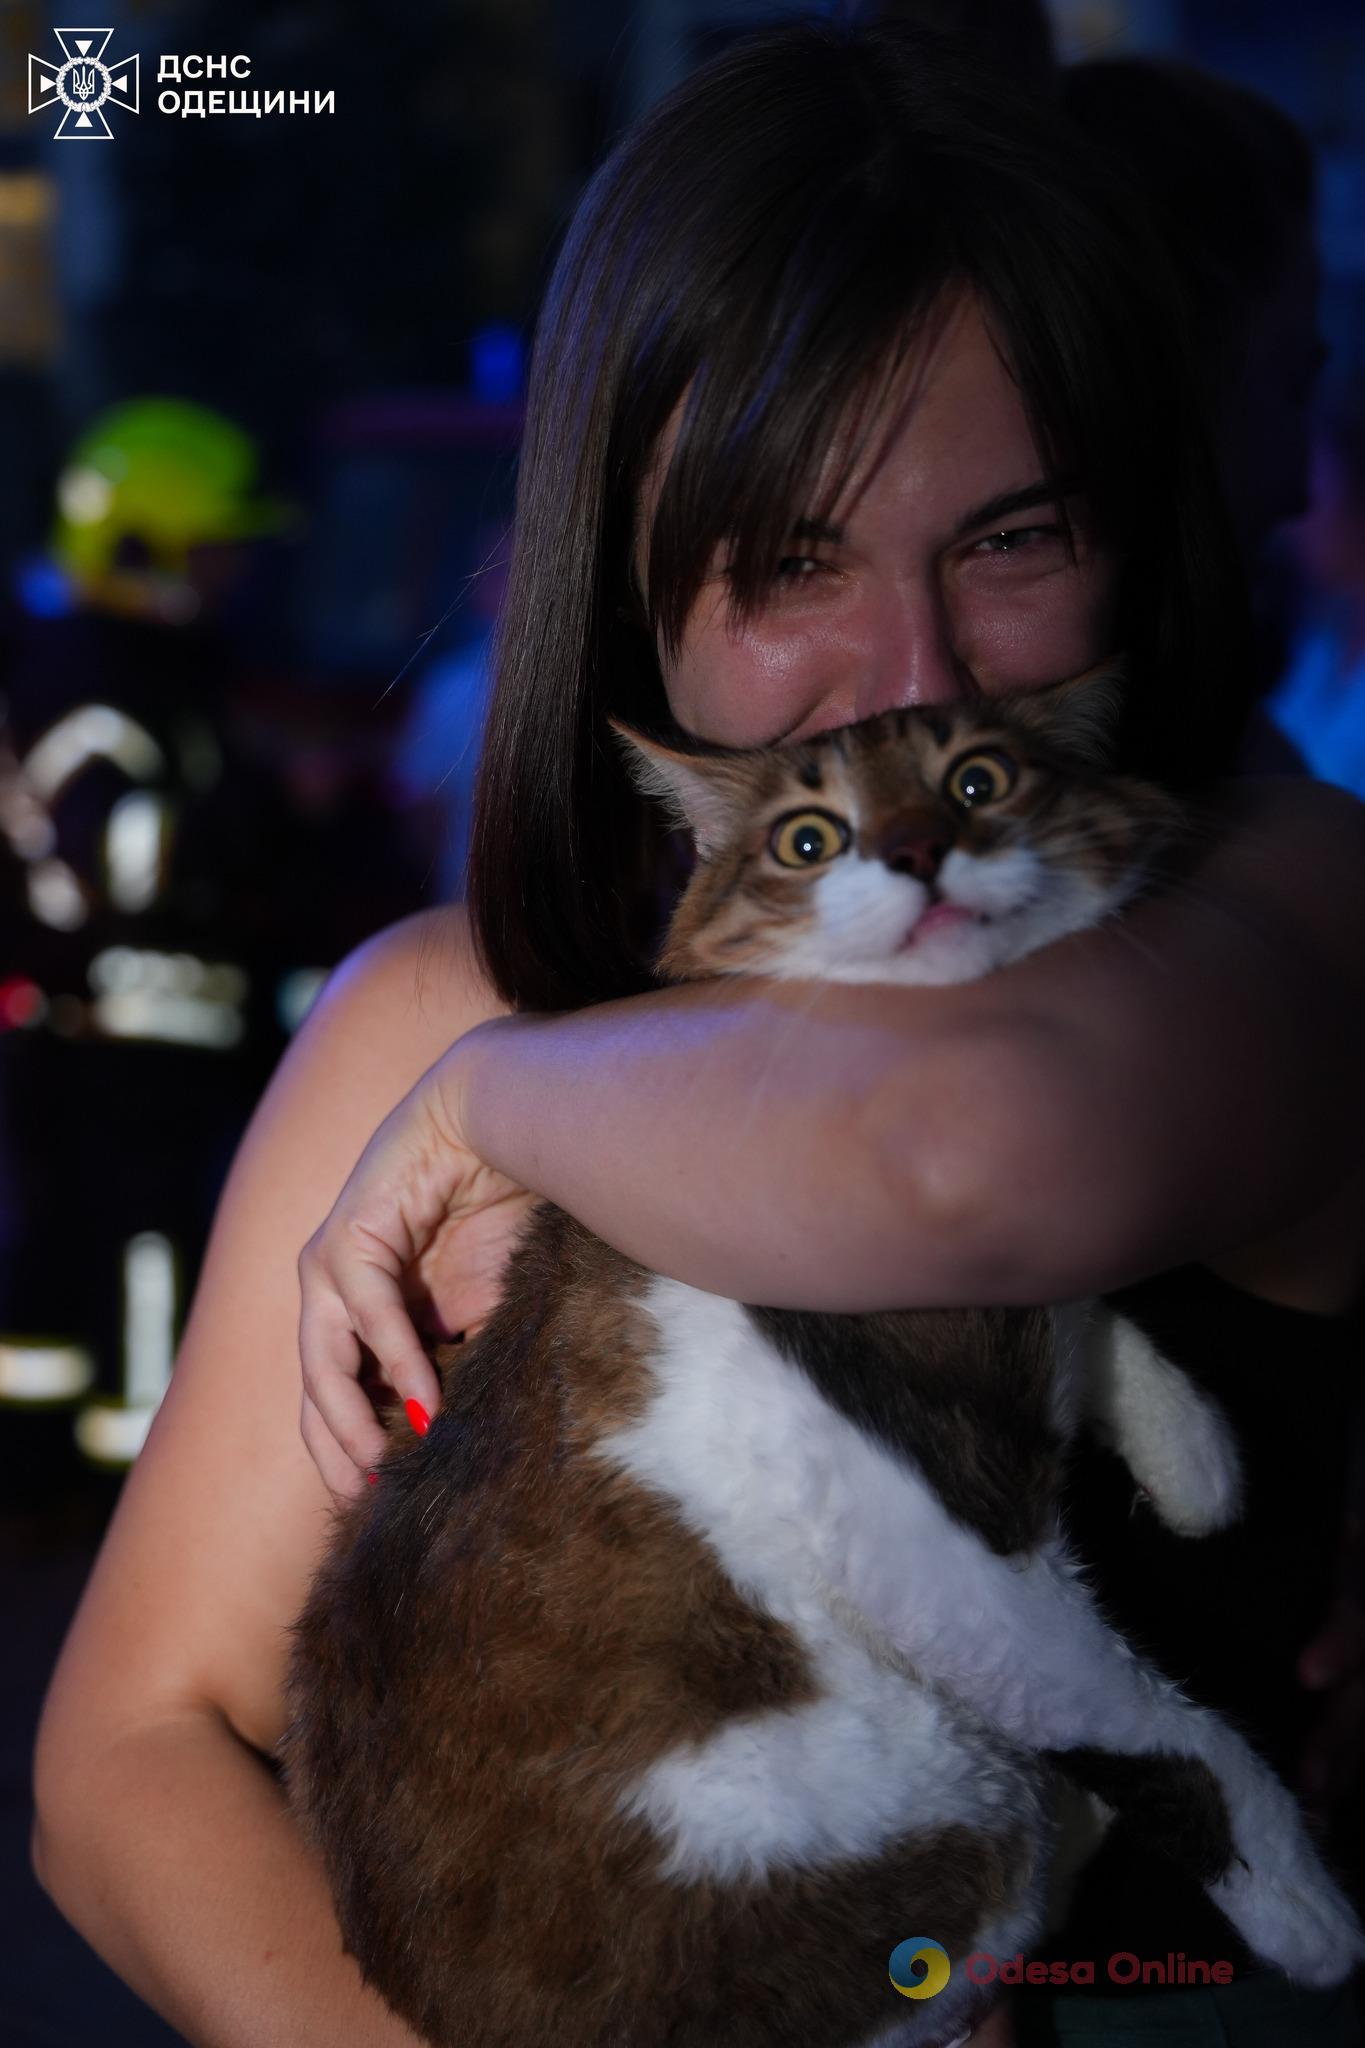 Під час пожежі у п’ятиповерхівці під Одесою врятували жінку з дитиною, а також кота (фото, відео)